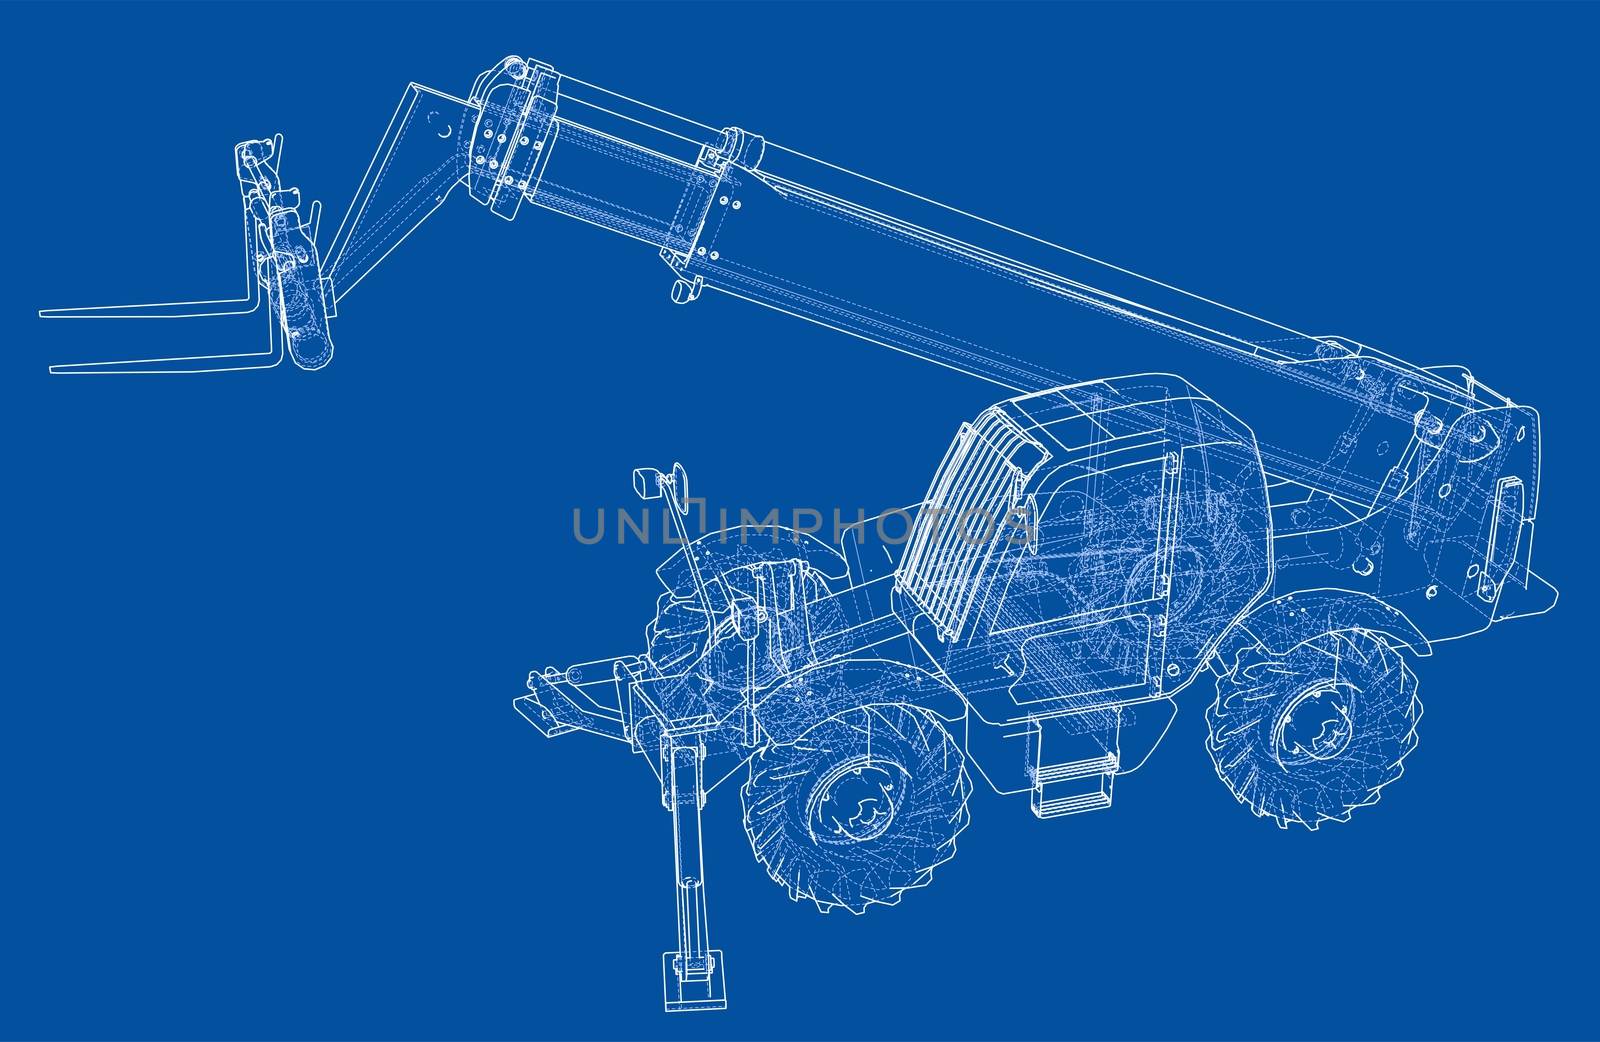 Forklift concept. 3d illustration. Blueprint or Wire-frame style